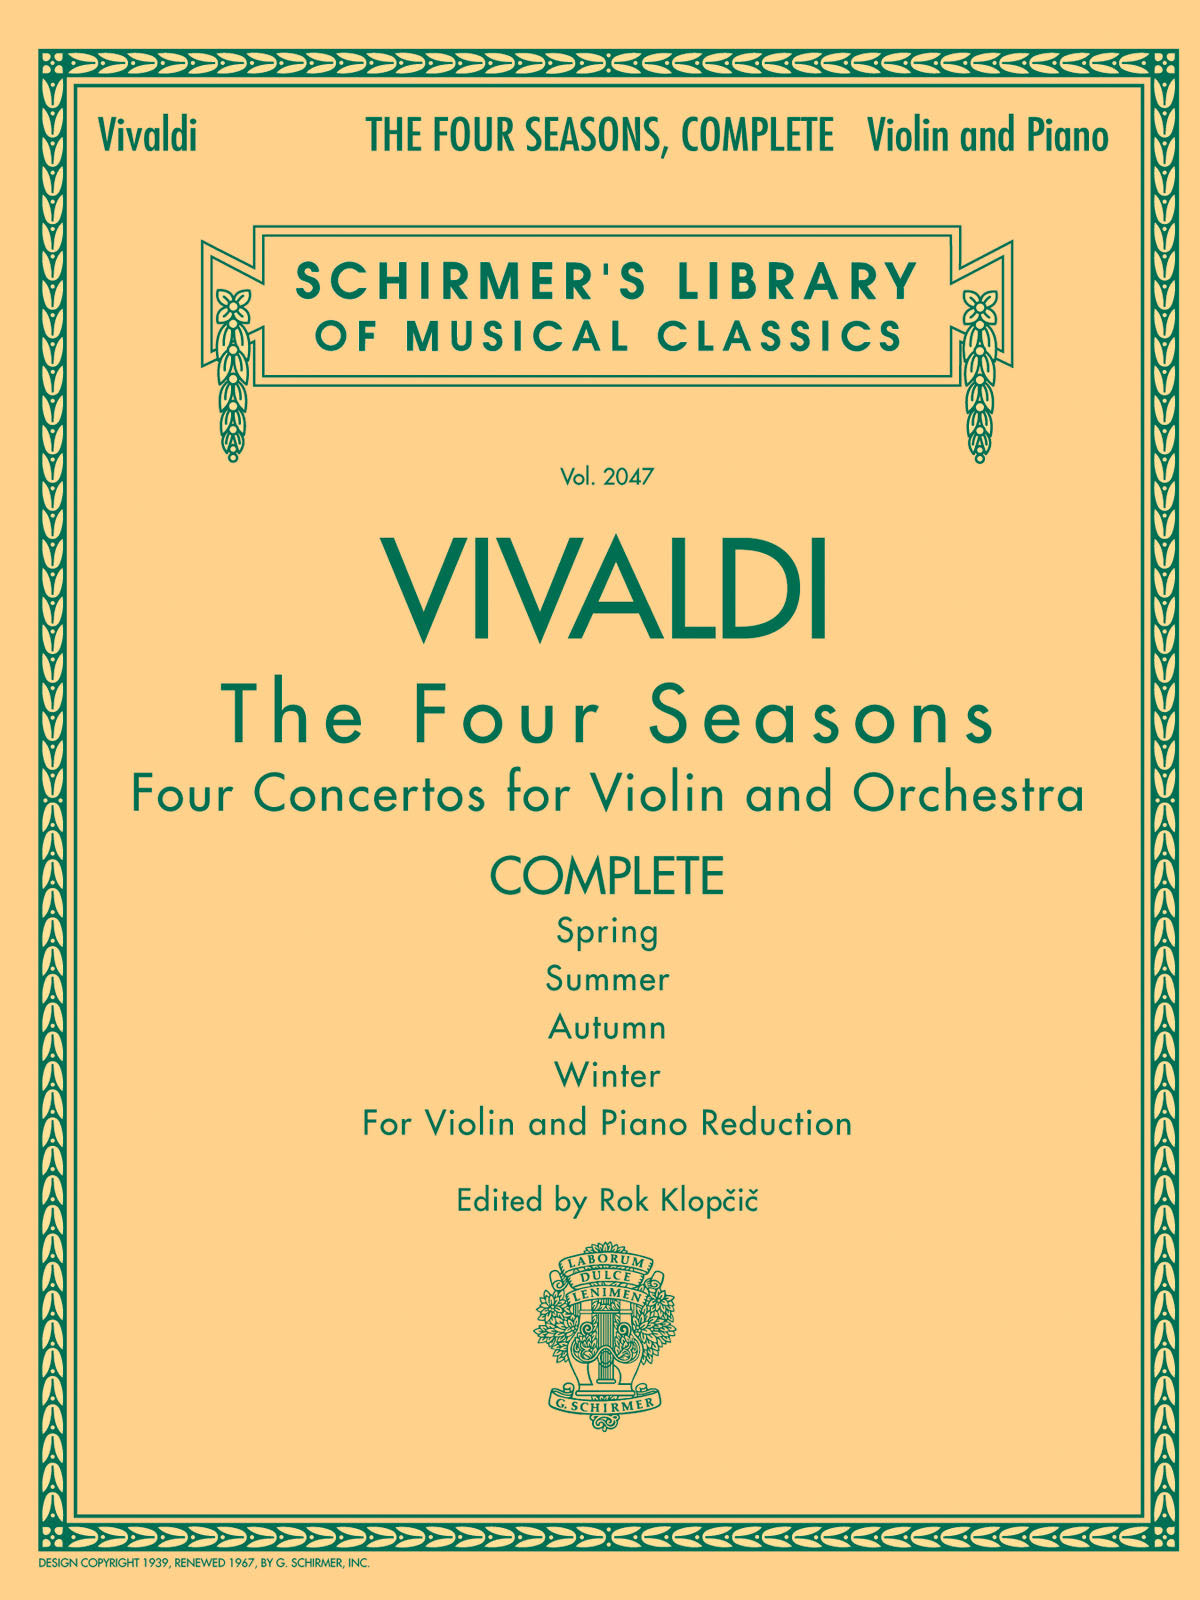 Antonio Vivaldi: The Four Seasons - Complete Edition: Violin